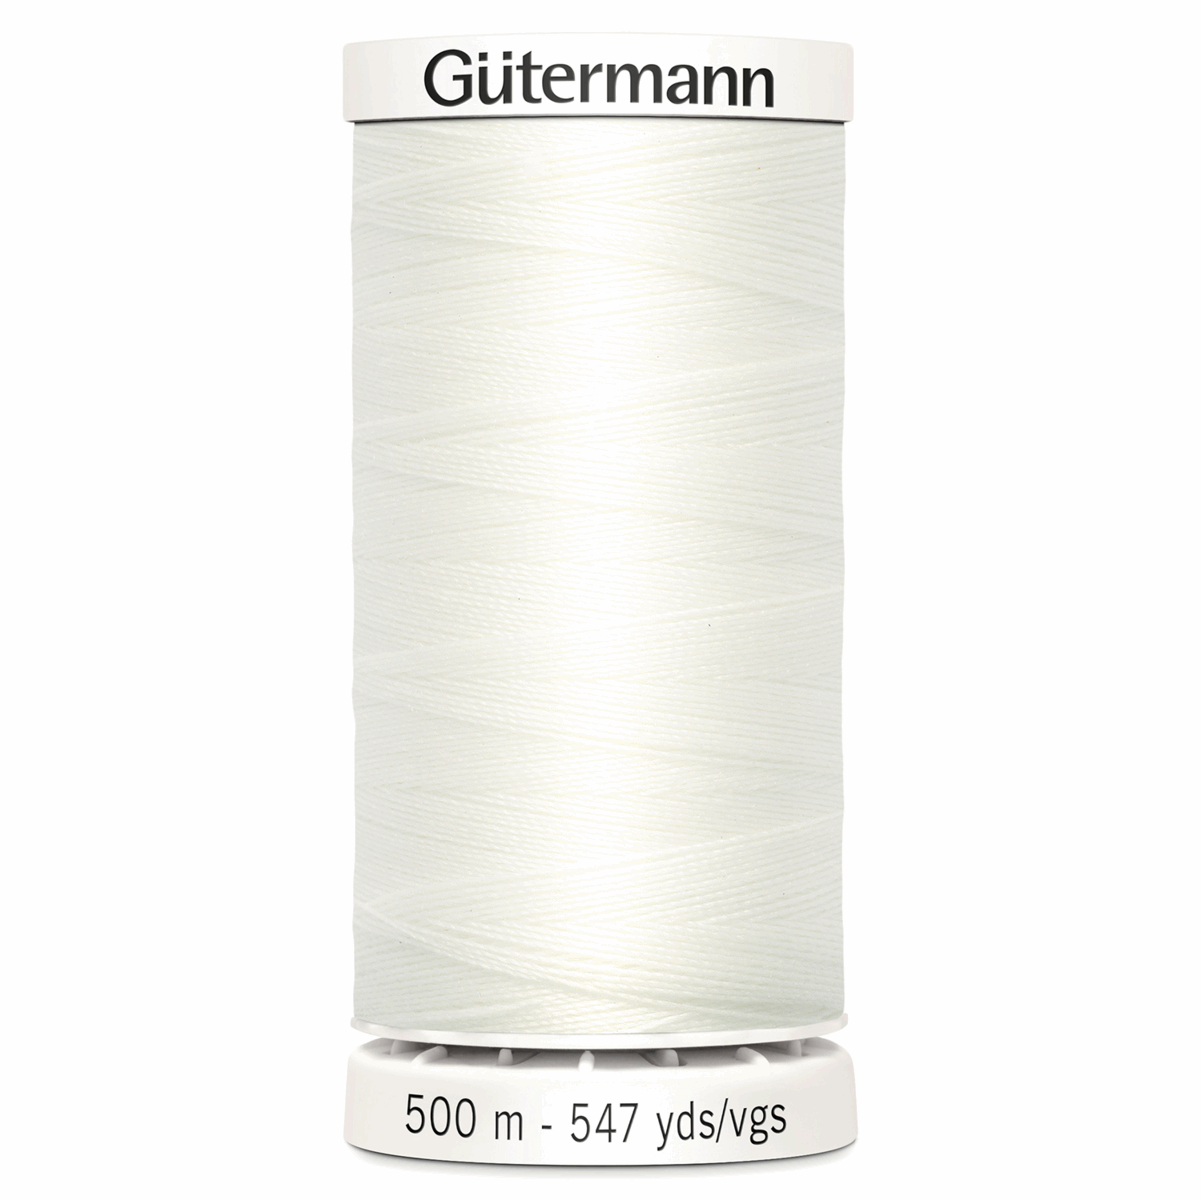 Gutermann Sew-All Thread 500m - Bridal White (#111)